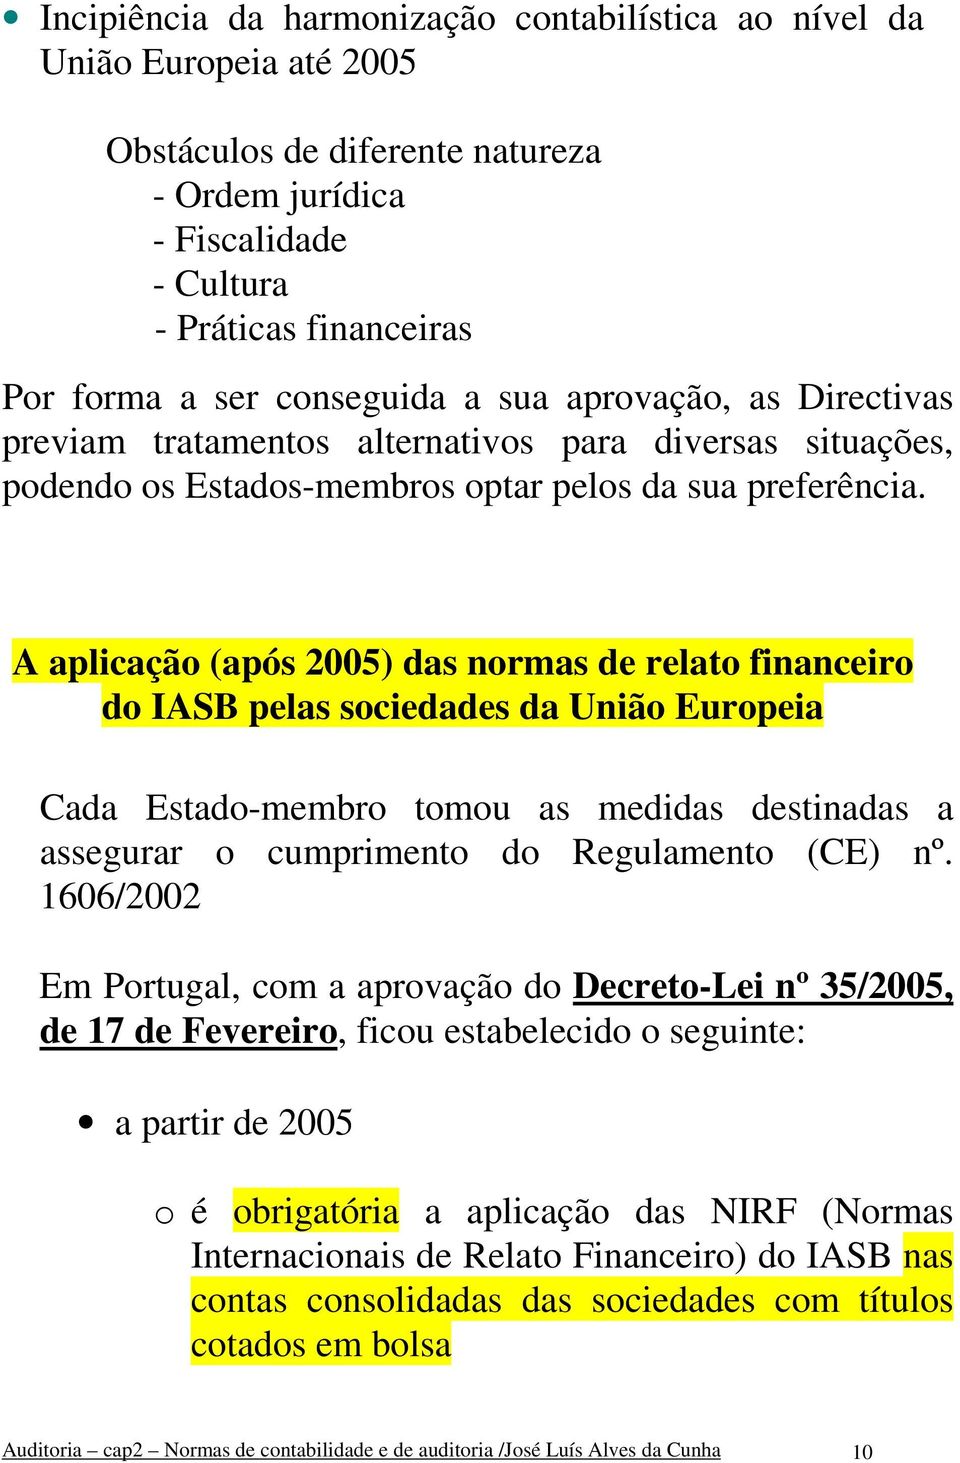 A aplicação (após 2005) das normas de relato financeiro do IASB pelas sociedades da União Europeia Cada Estado-membro tomou as medidas destinadas a assegurar o cumprimento do Regulamento (CE) nº.